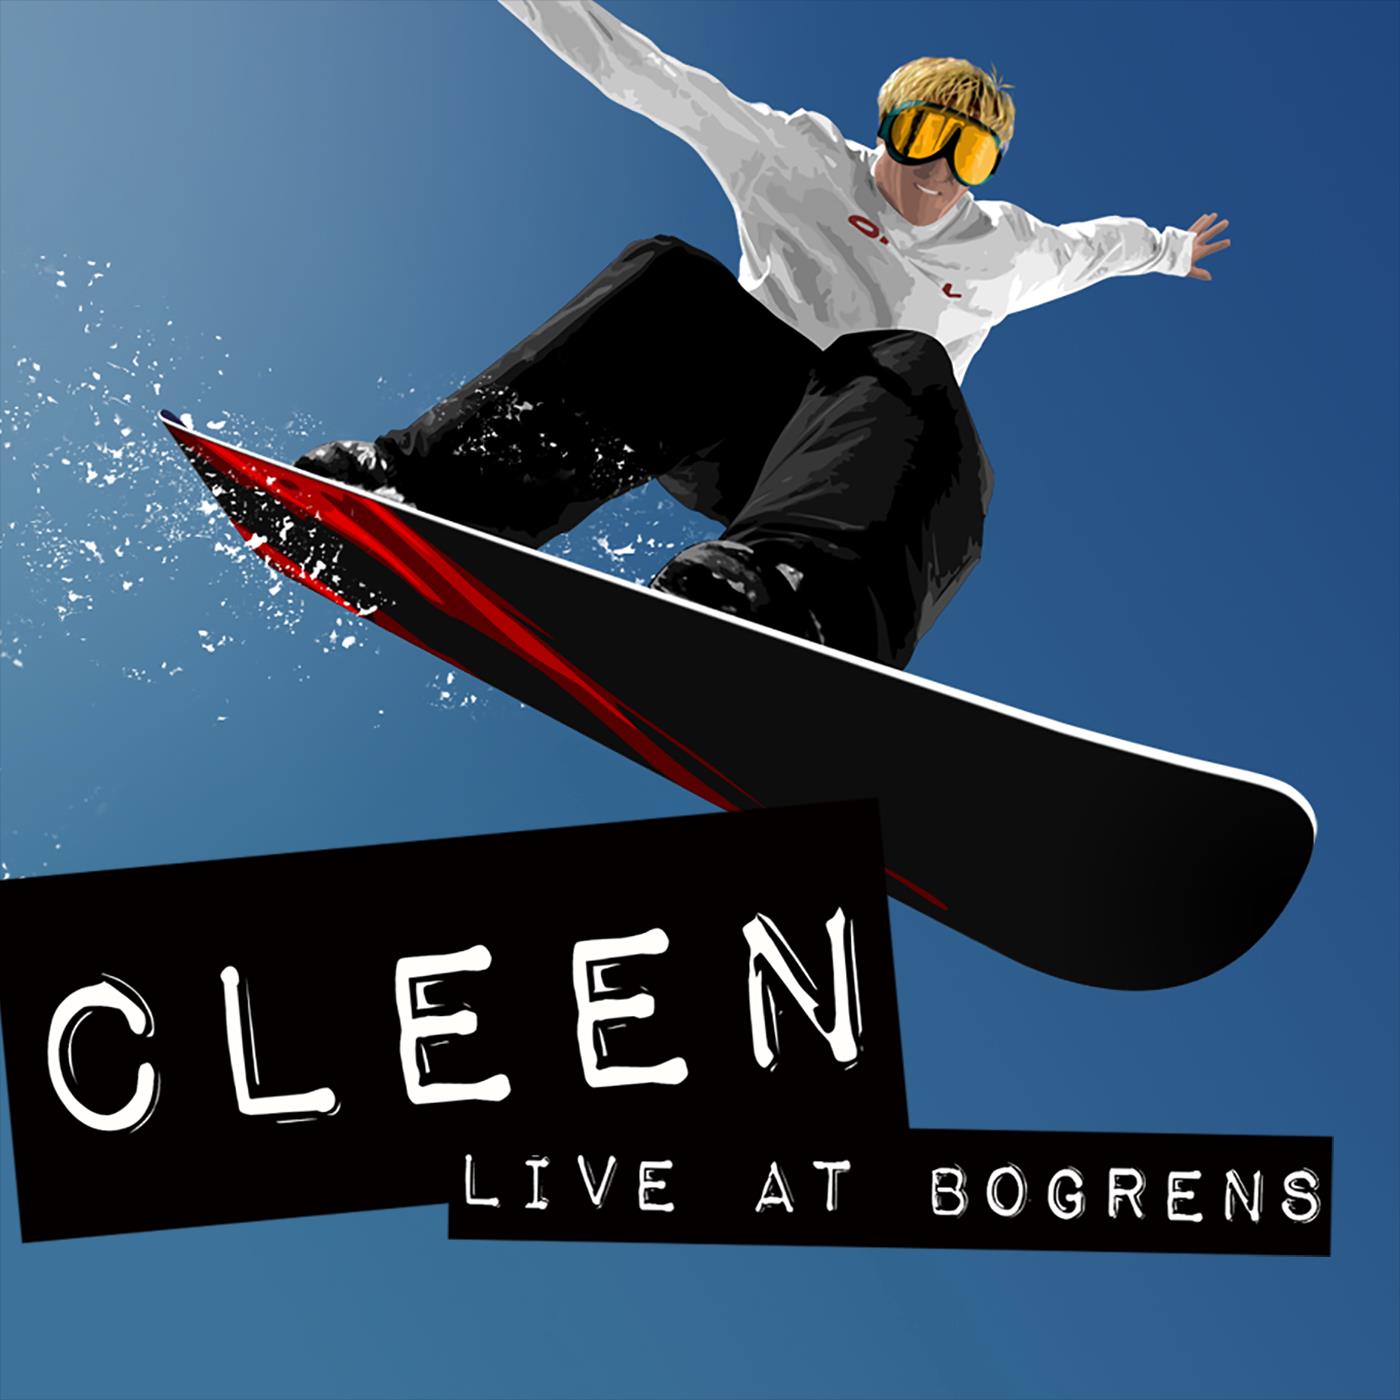 Live at Bogrens